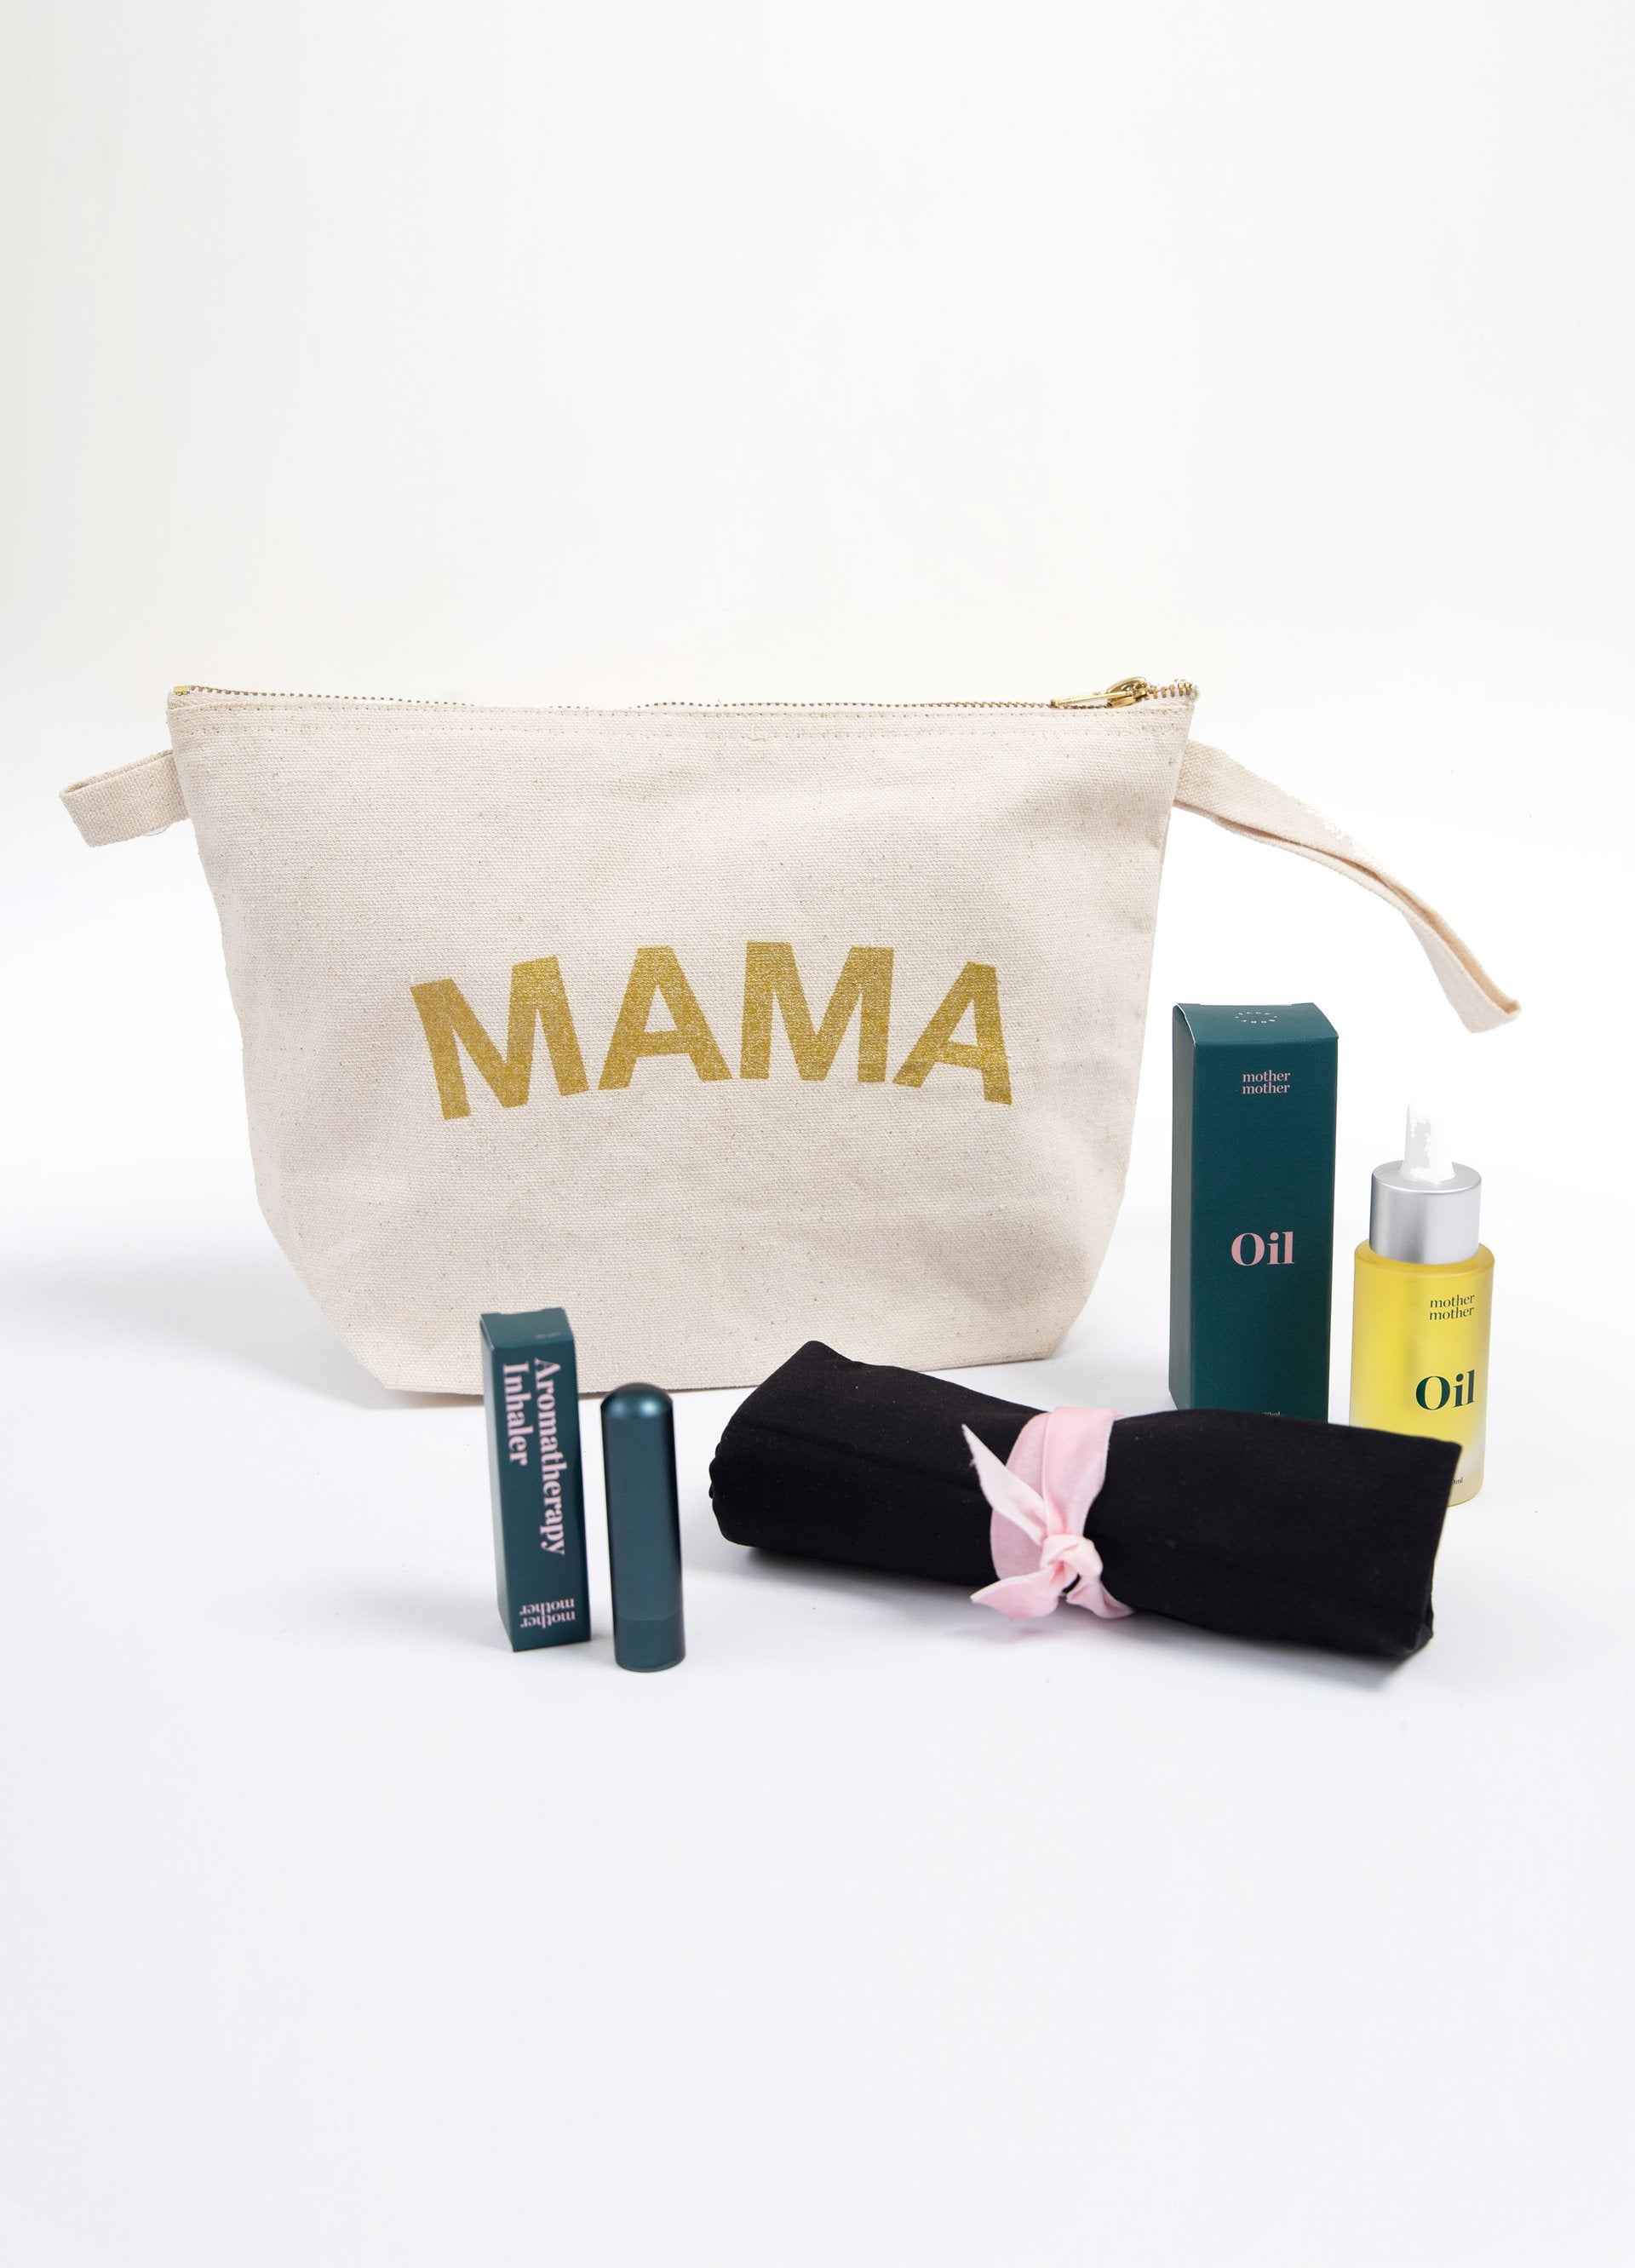 Mama Mio Pregnancy Essentials Gift Set, Travel Size Starter Kit